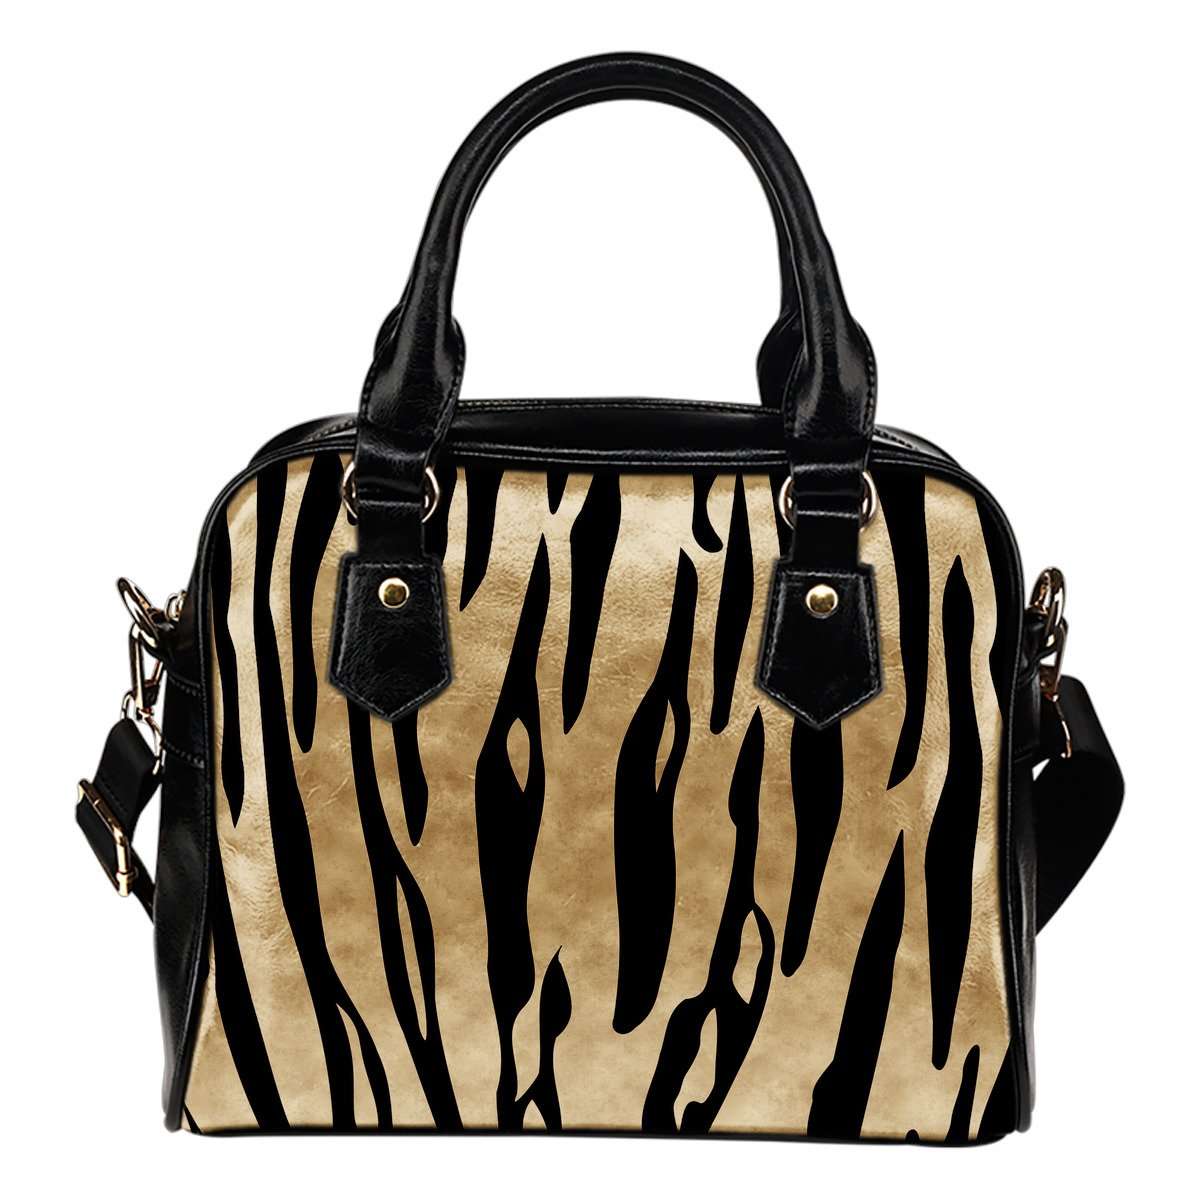 Animal Prints White Tiger Stripes Theme Women Fashion Shoulder Handbag Black Vegan Faux Leather